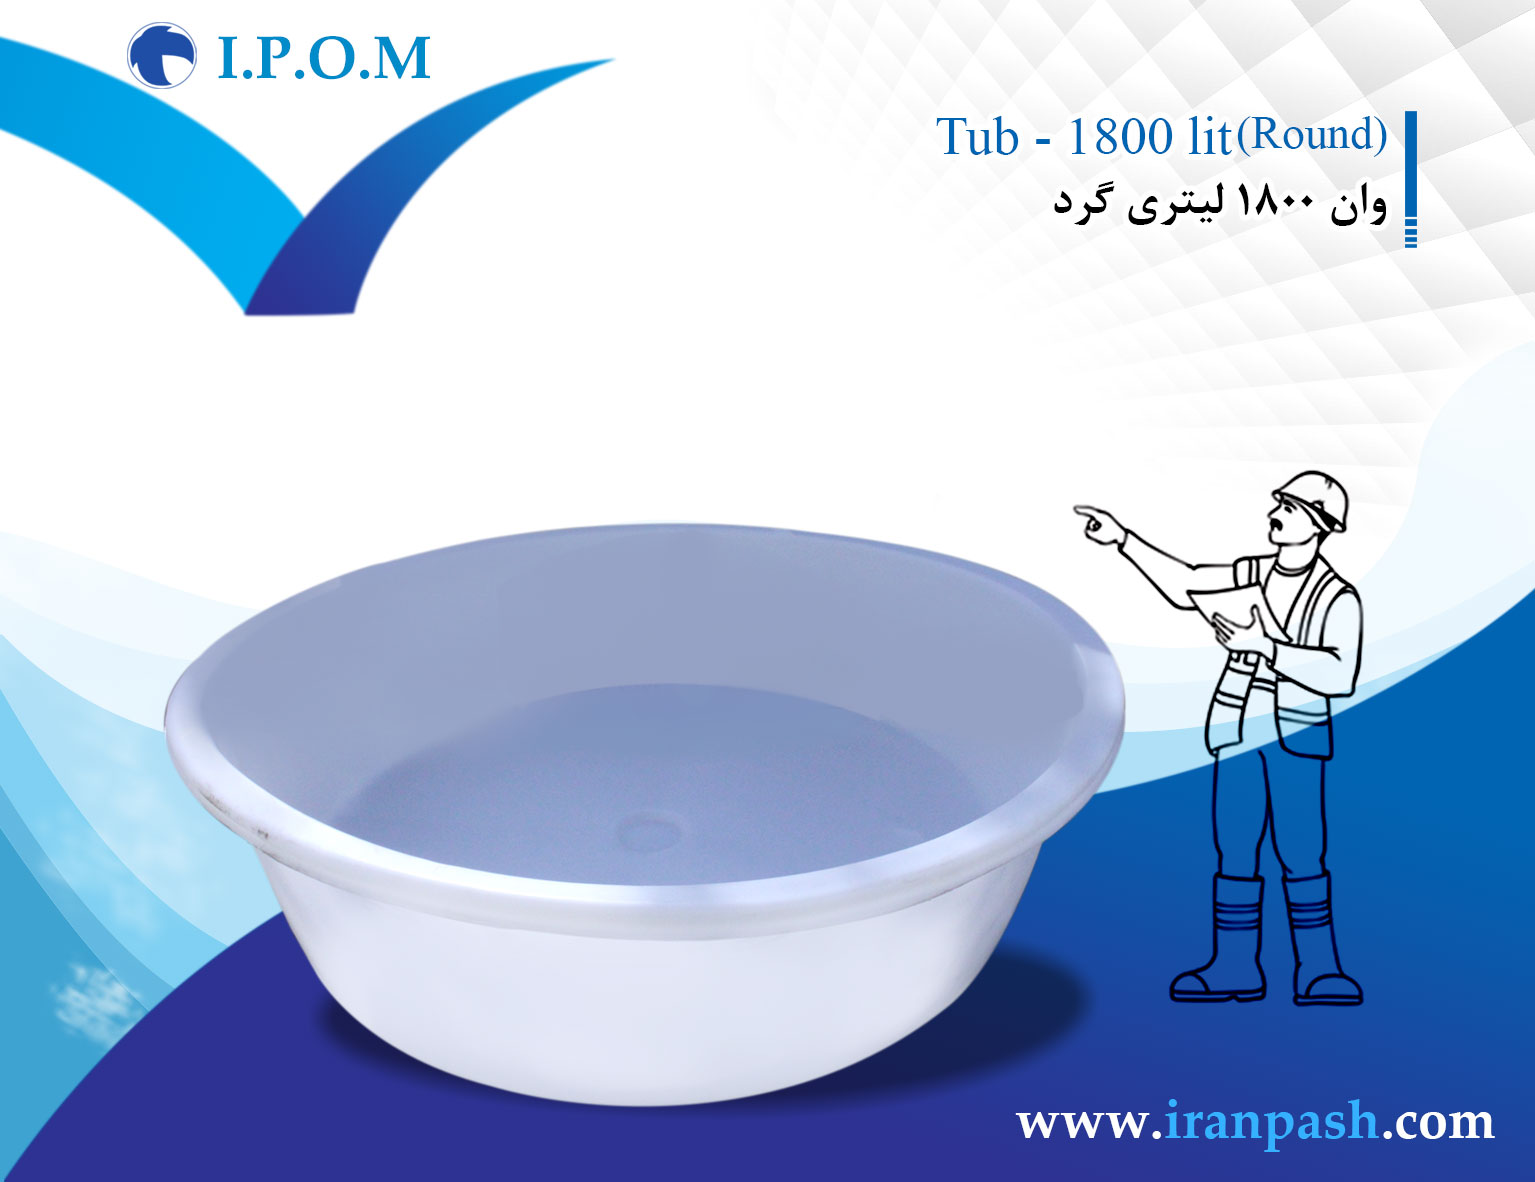 1800 liter round tub